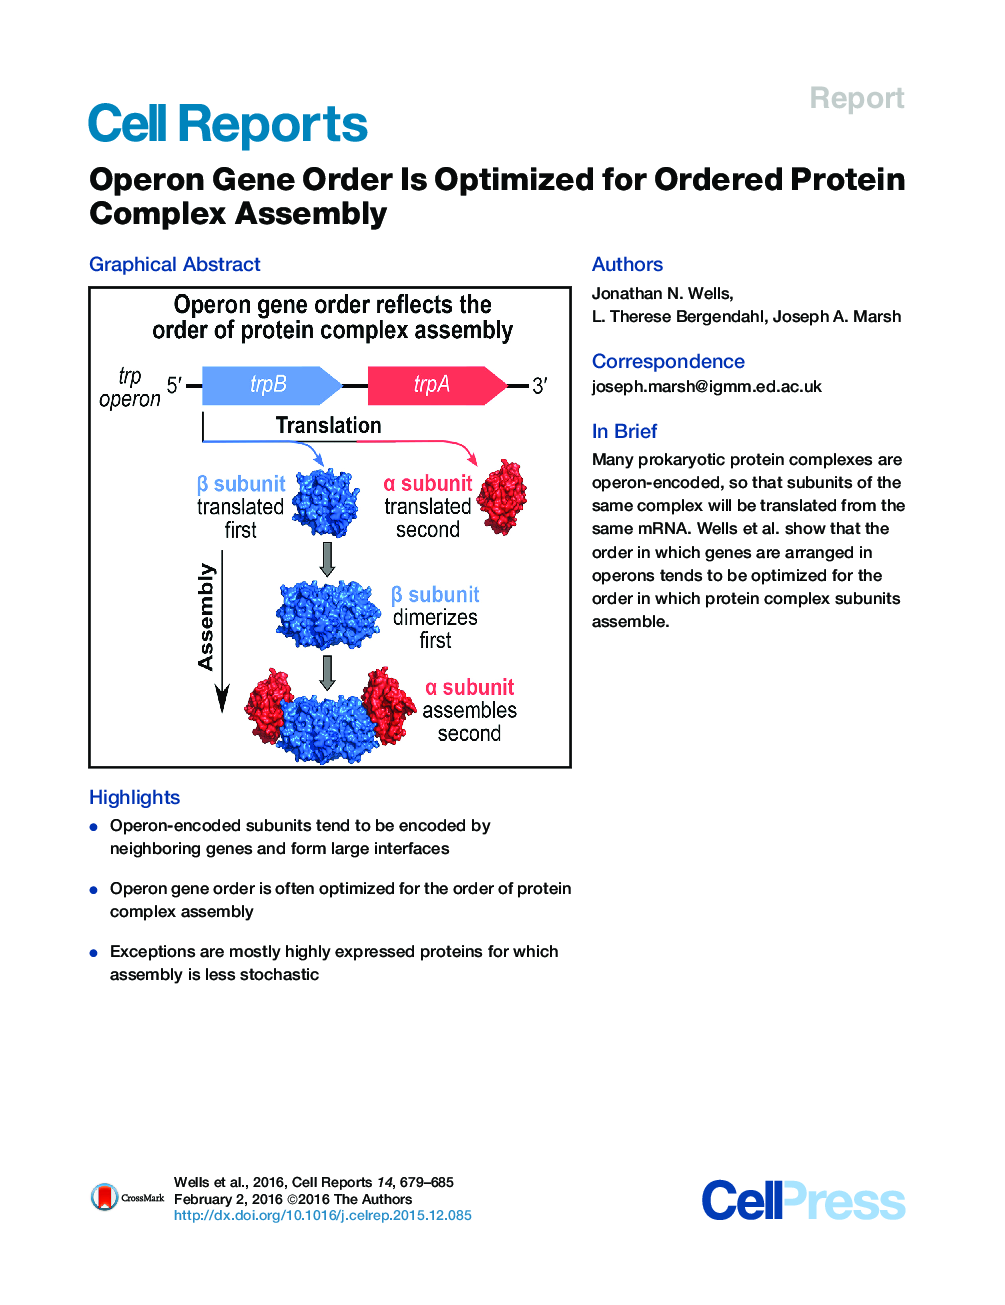 ترتیب ژن اپرون برای تجمع کمپلکس پروتئین مرتب، بهینه شده است